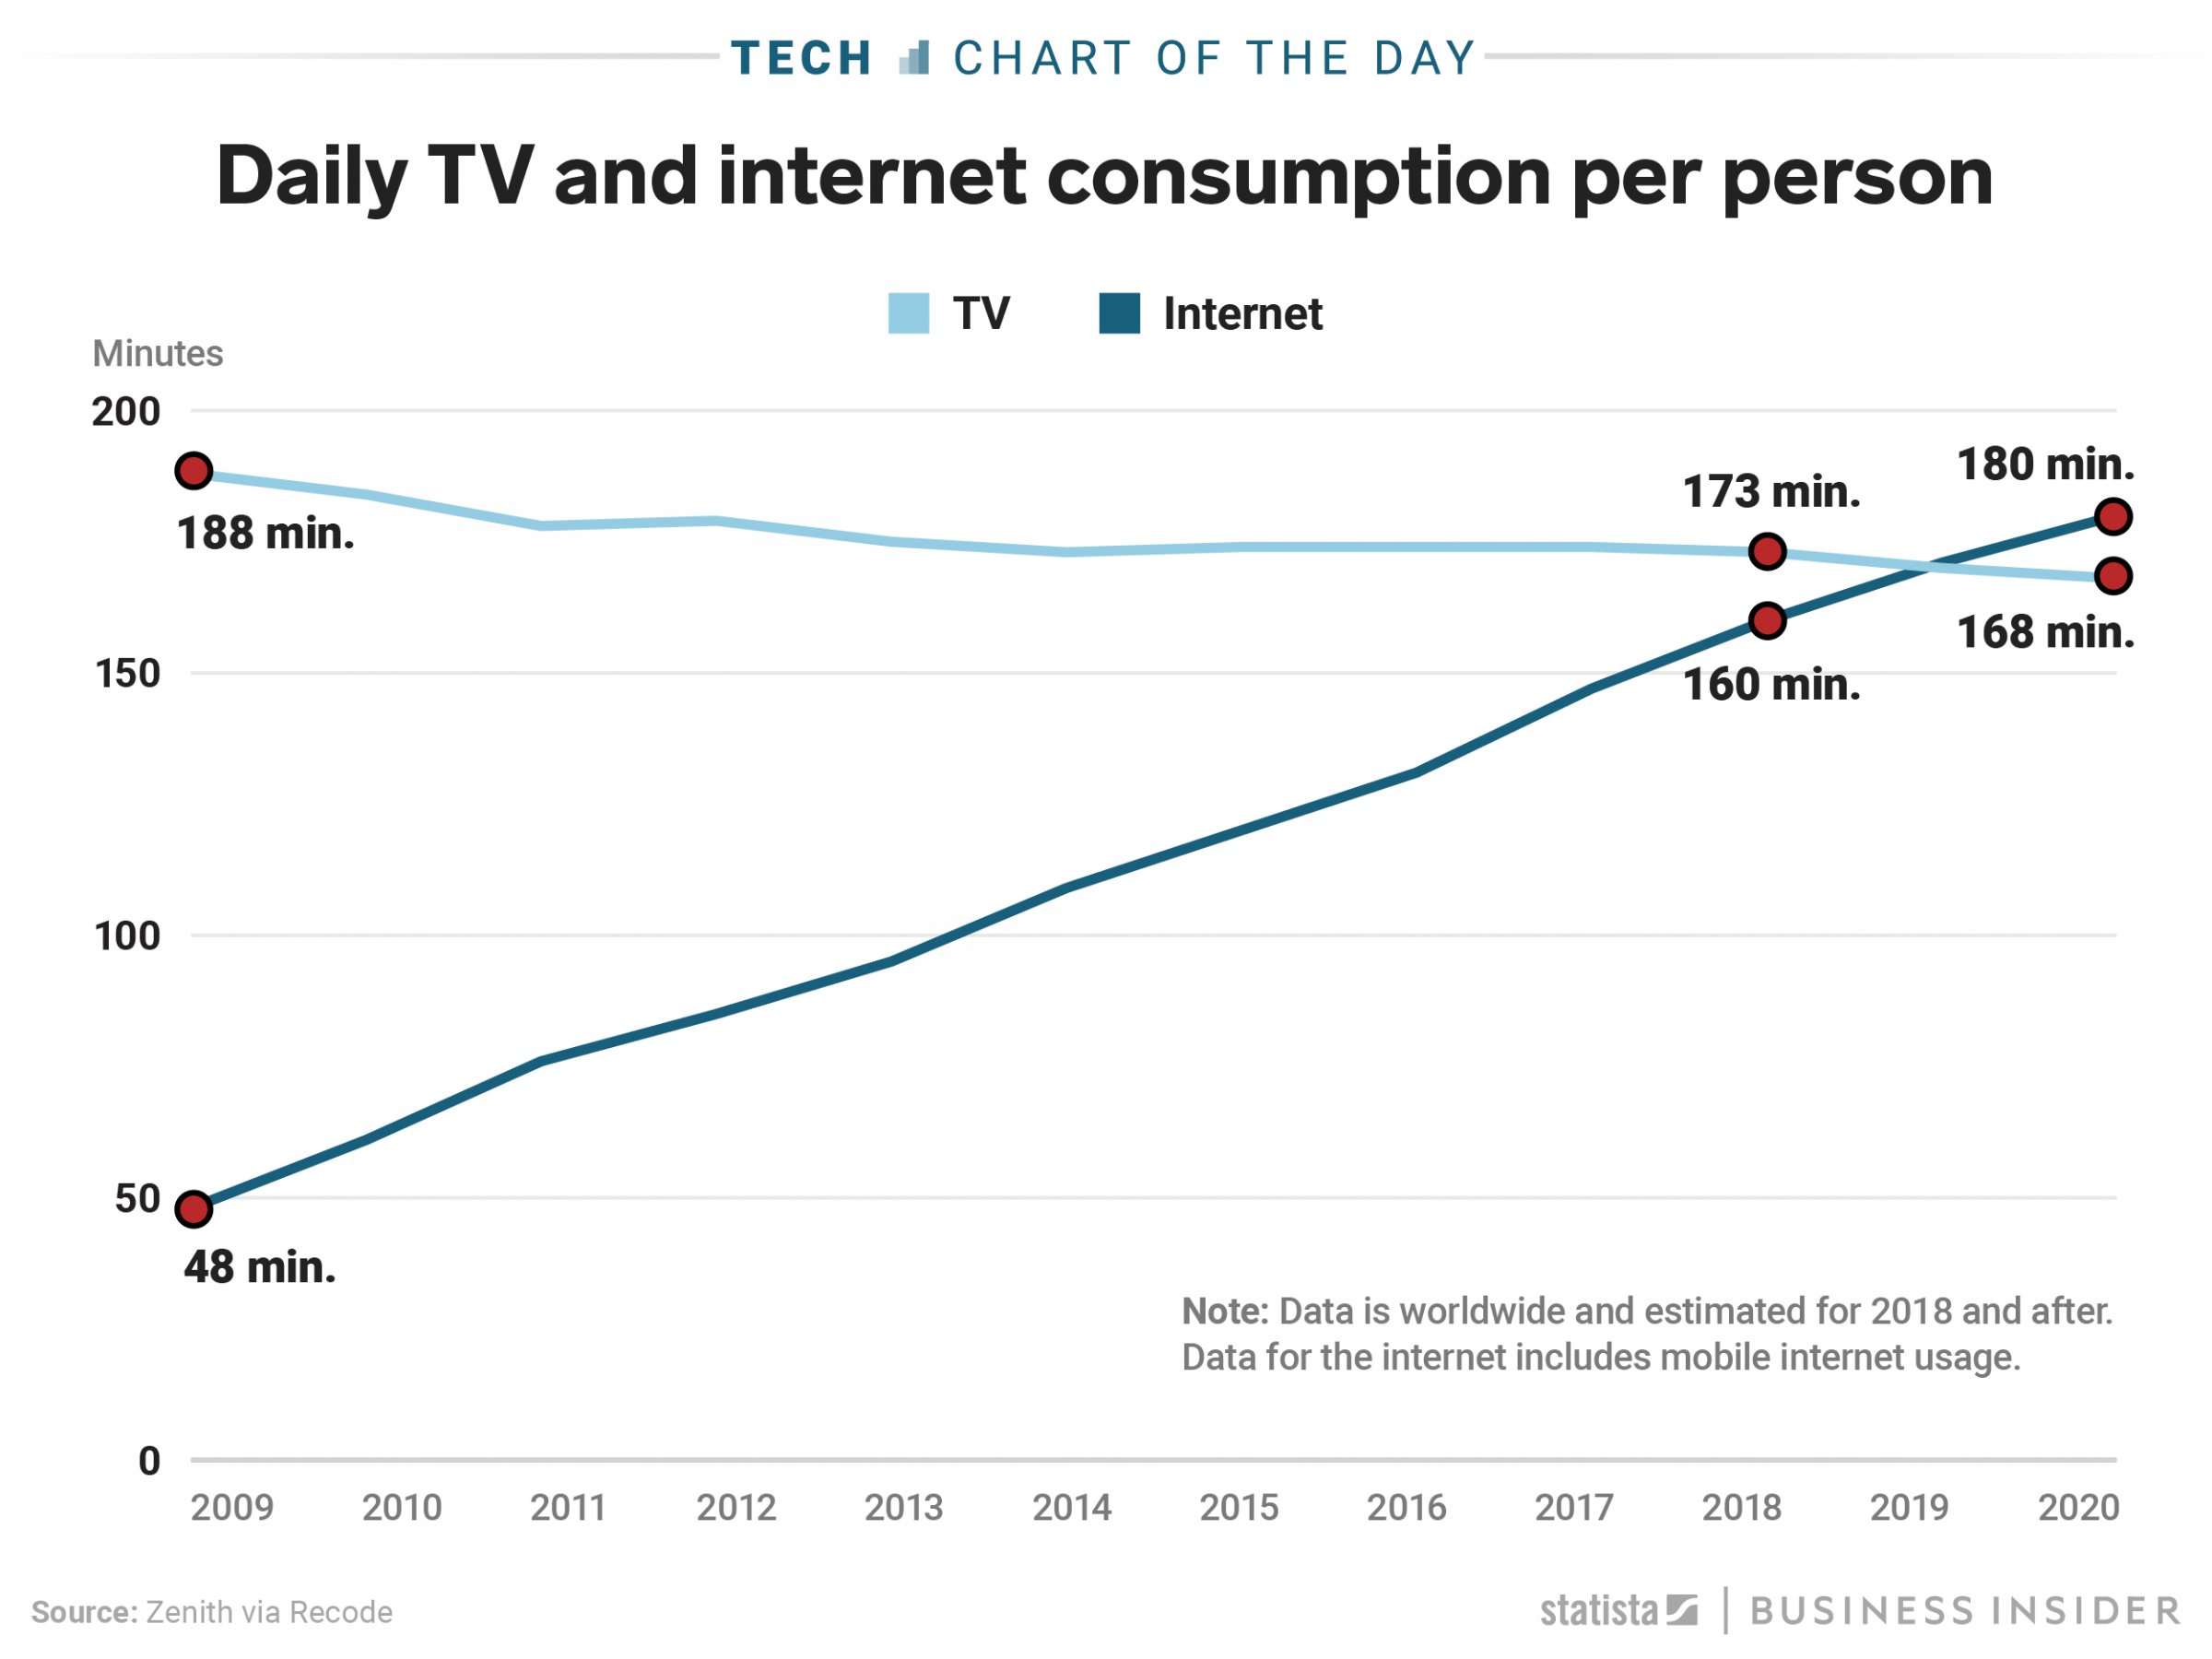 TV vs Internet